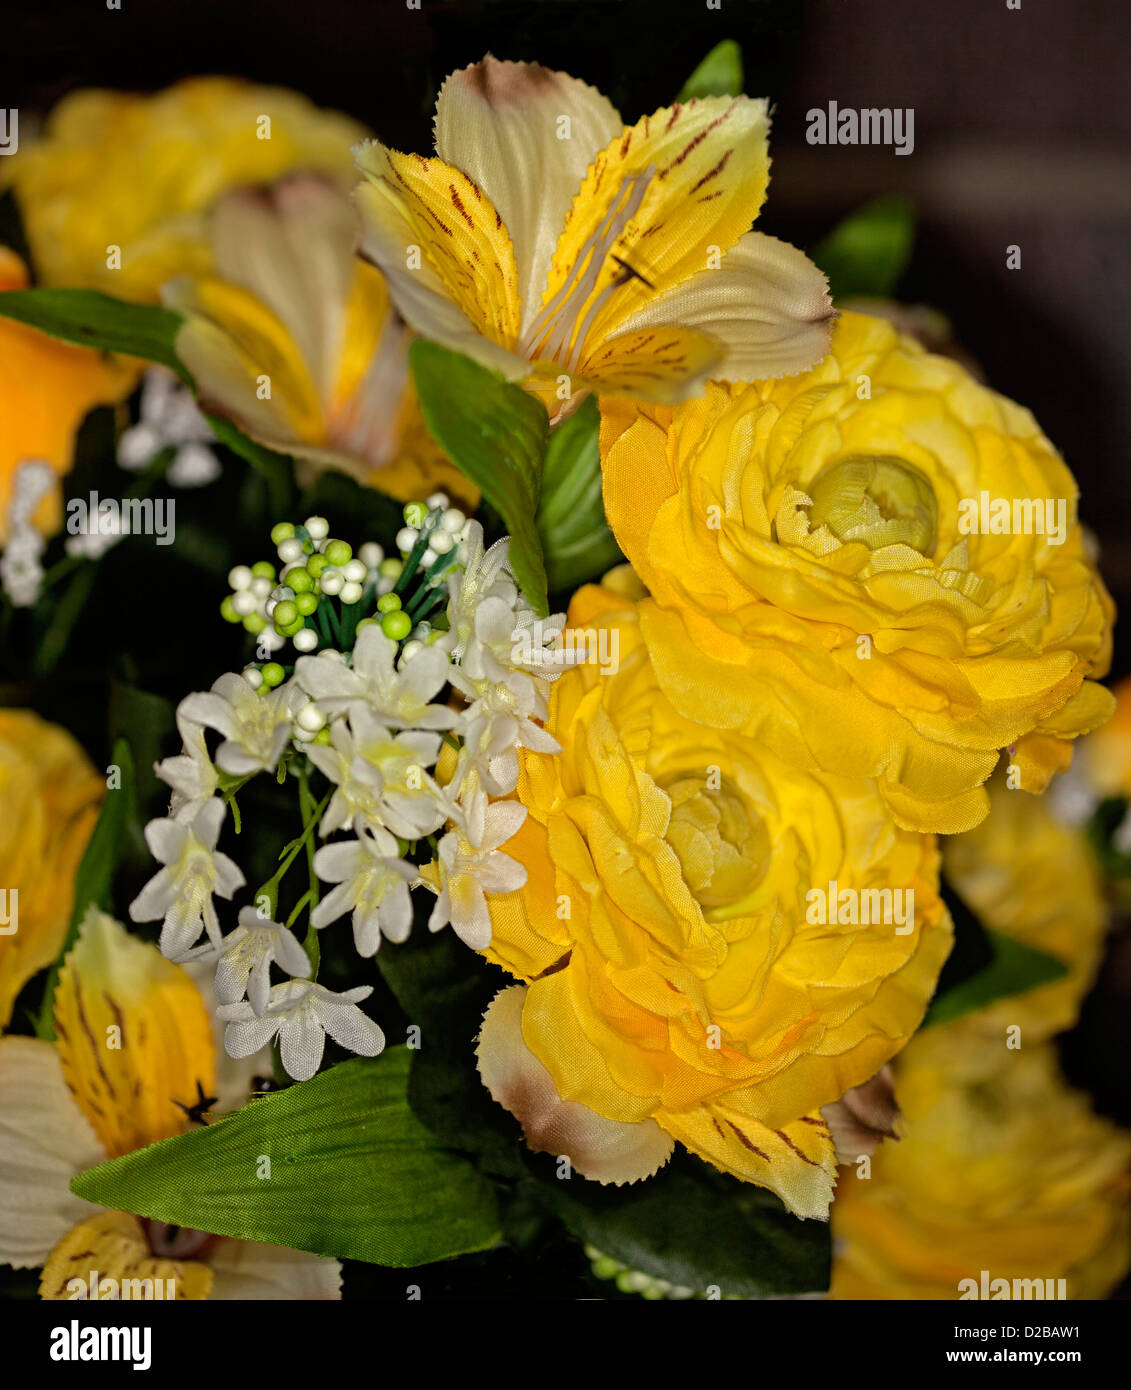 Bouquet von schönen künstlichen / Seide Rosen und andere Blumen - leuchtend gelb und weiß - vor einem dunklen Hintergrund Stockfoto